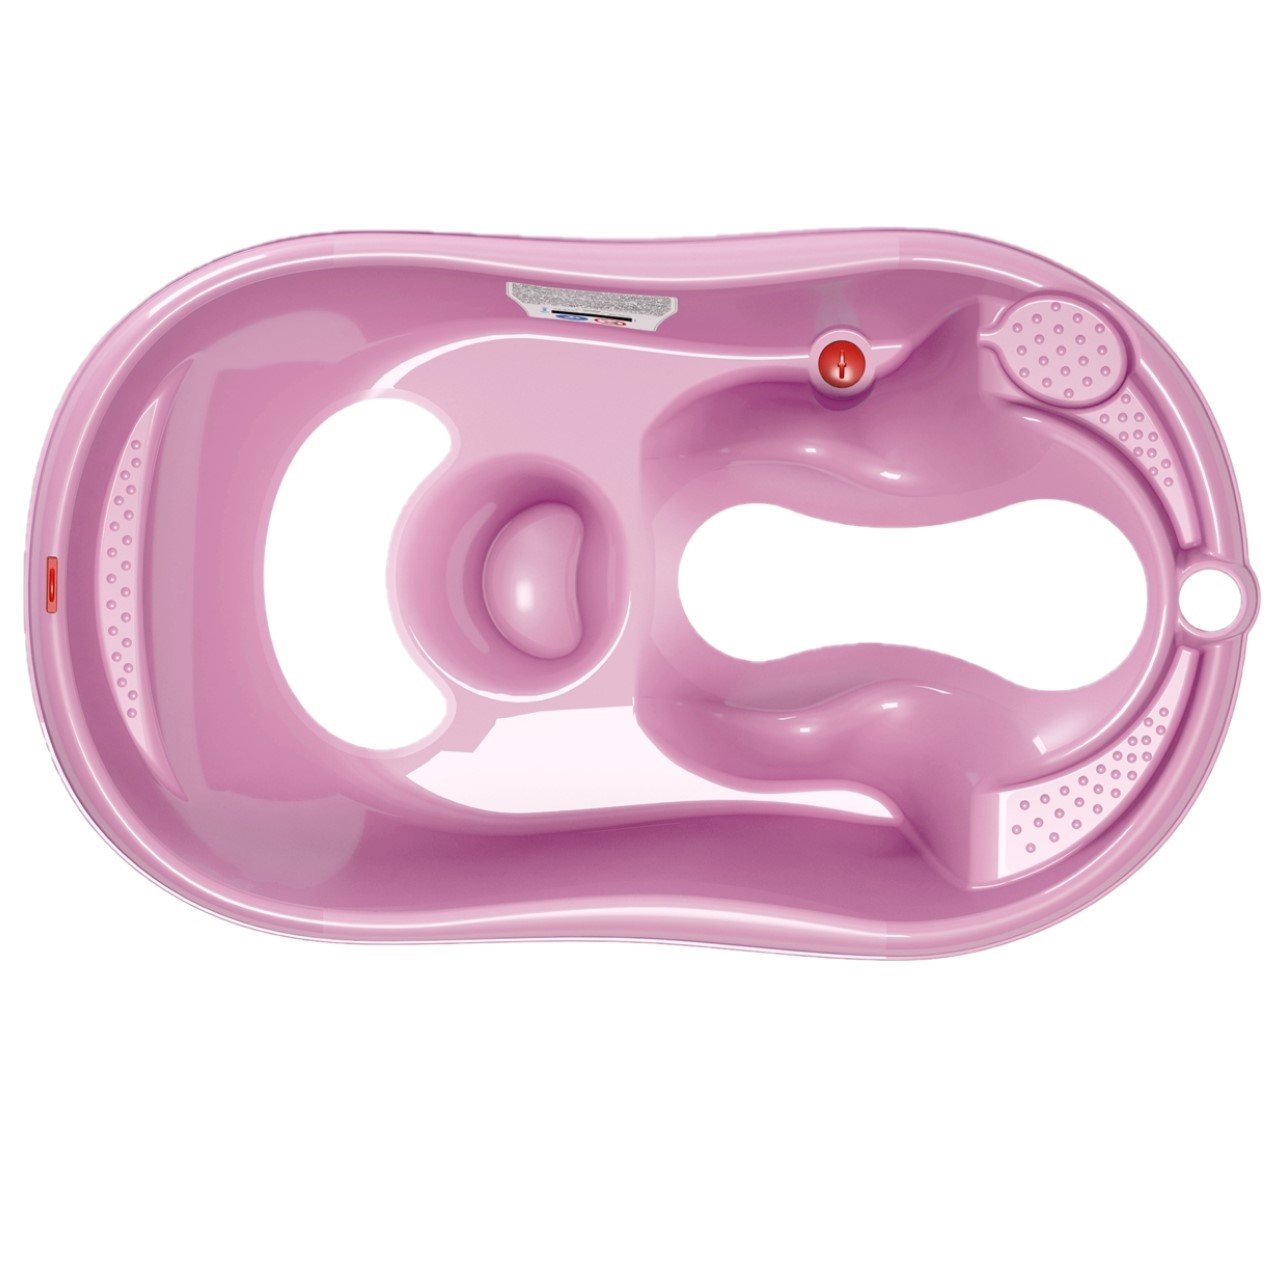 Ванна з анатомічною гіркою OK Baby Onda Evolution, рожева (38081400) - фото 1